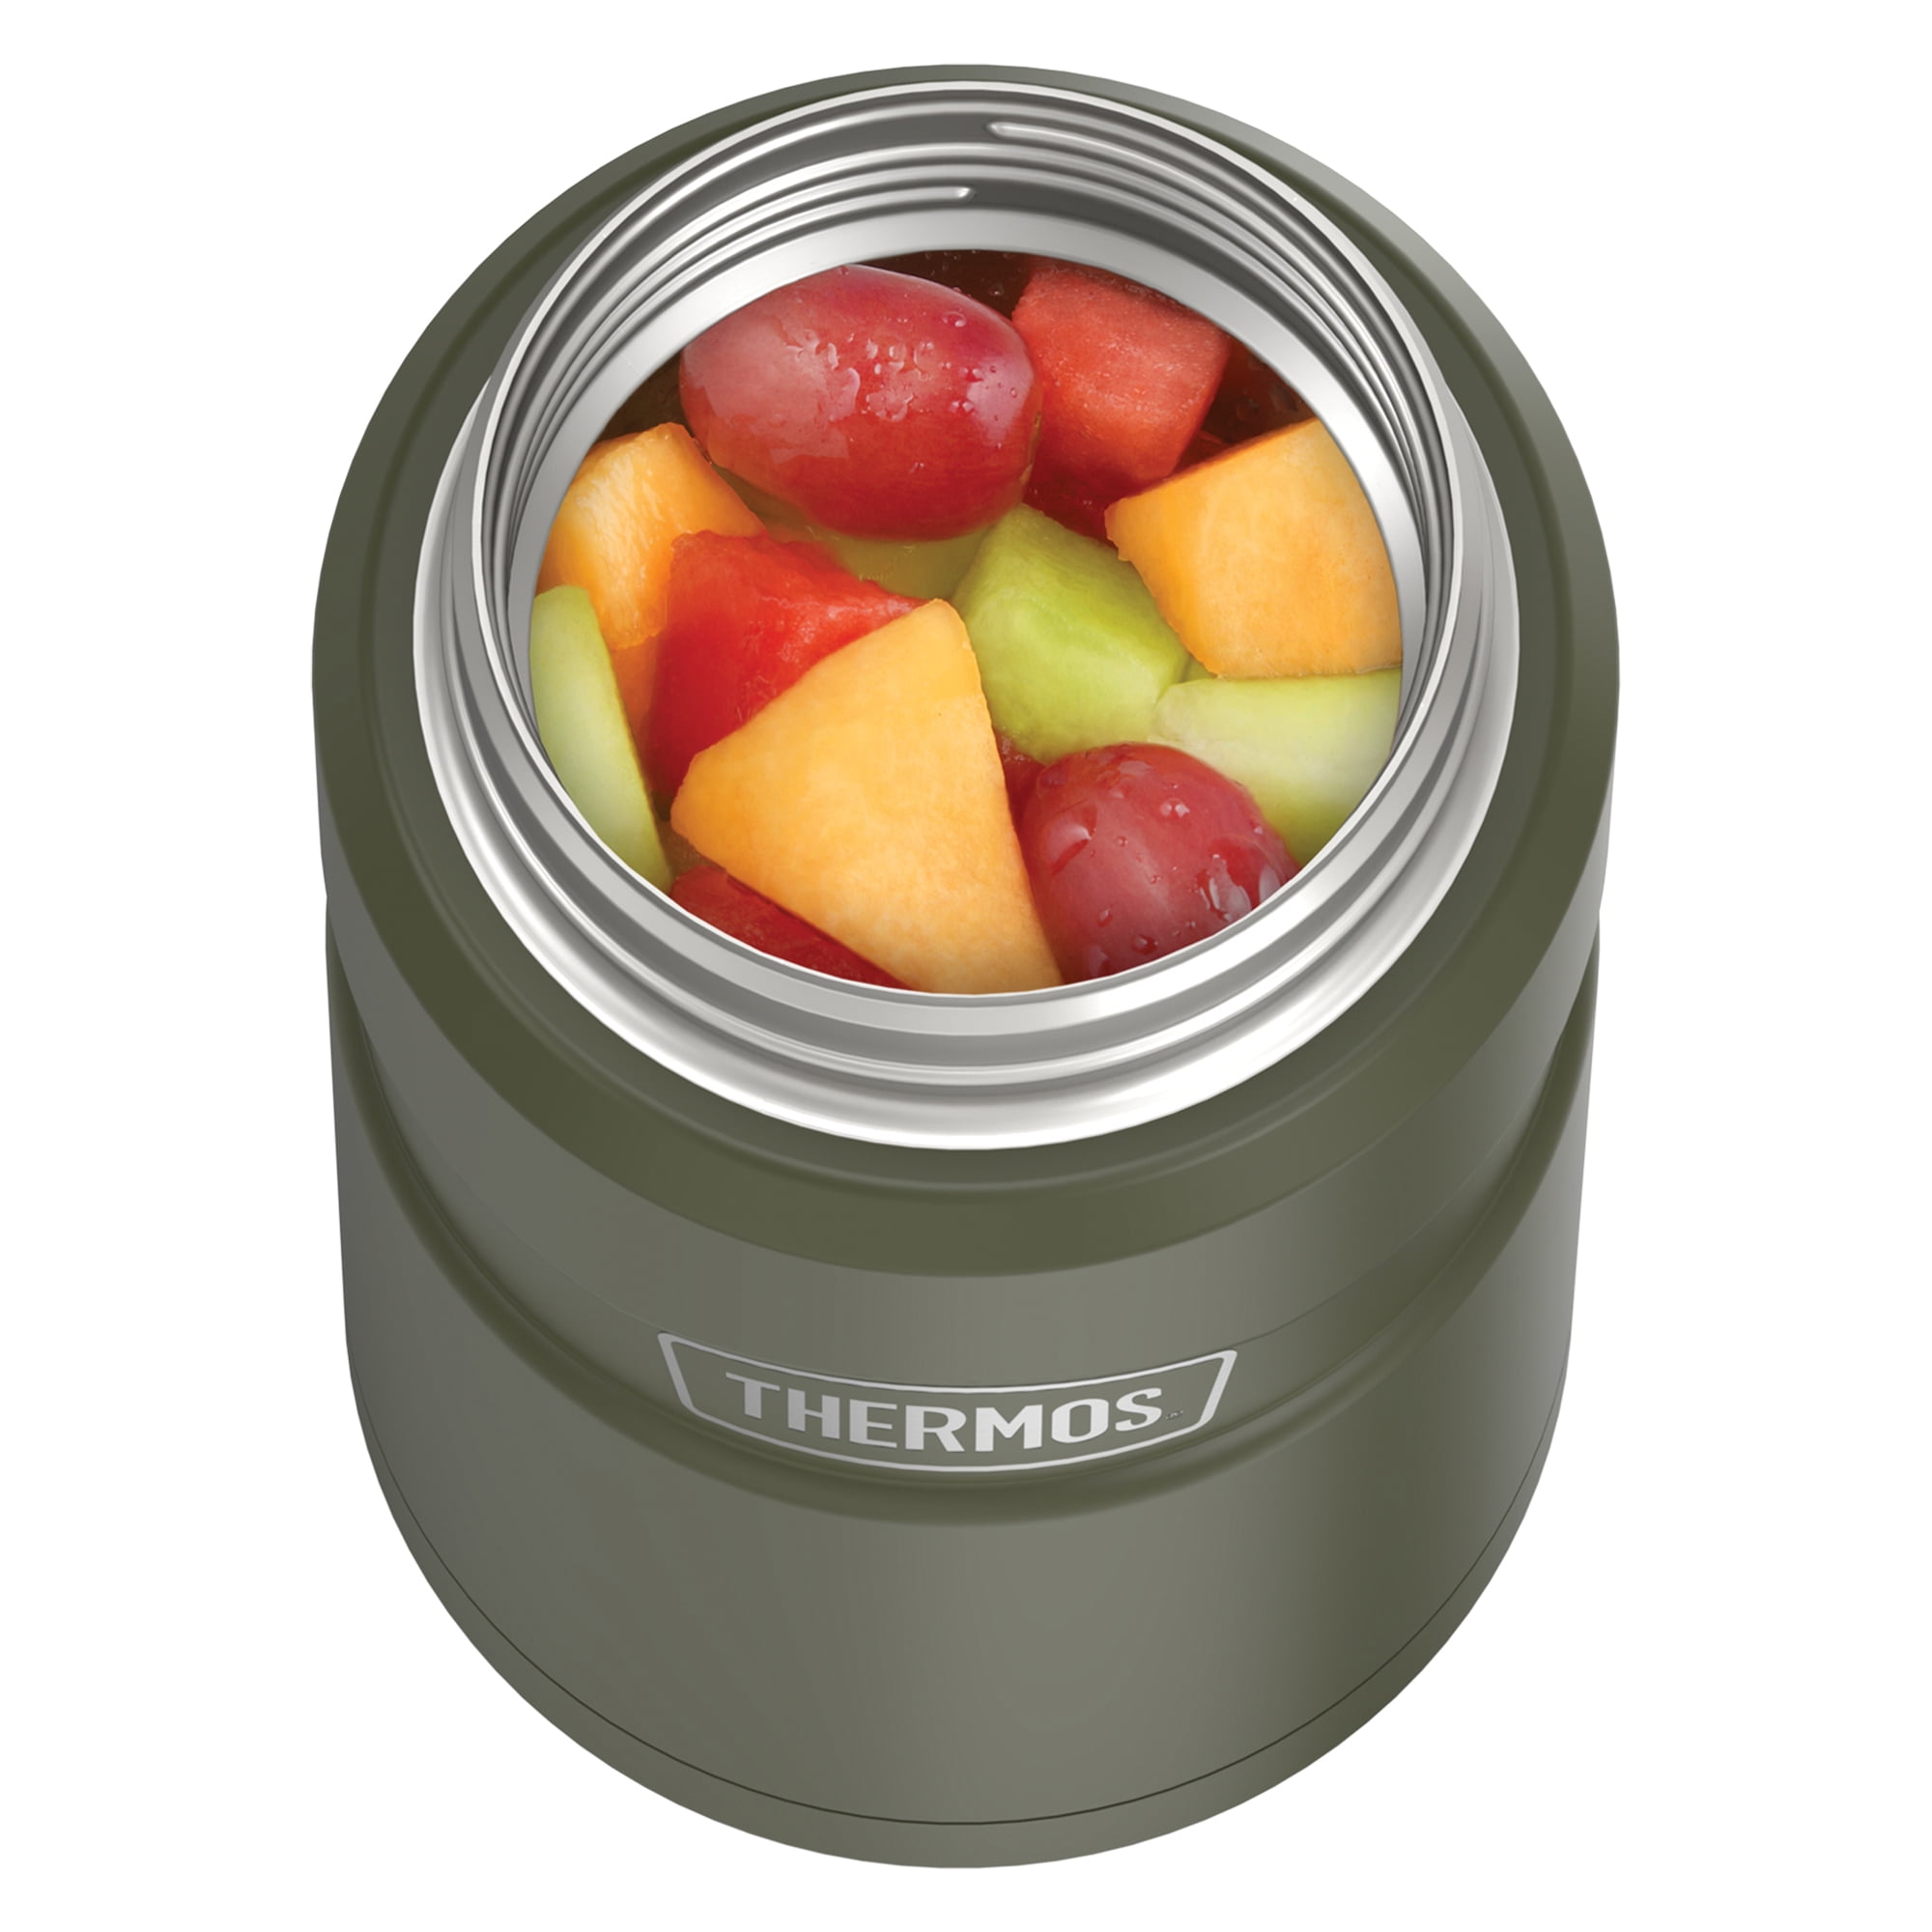 Thermos 24oz Food Jar Test 01 